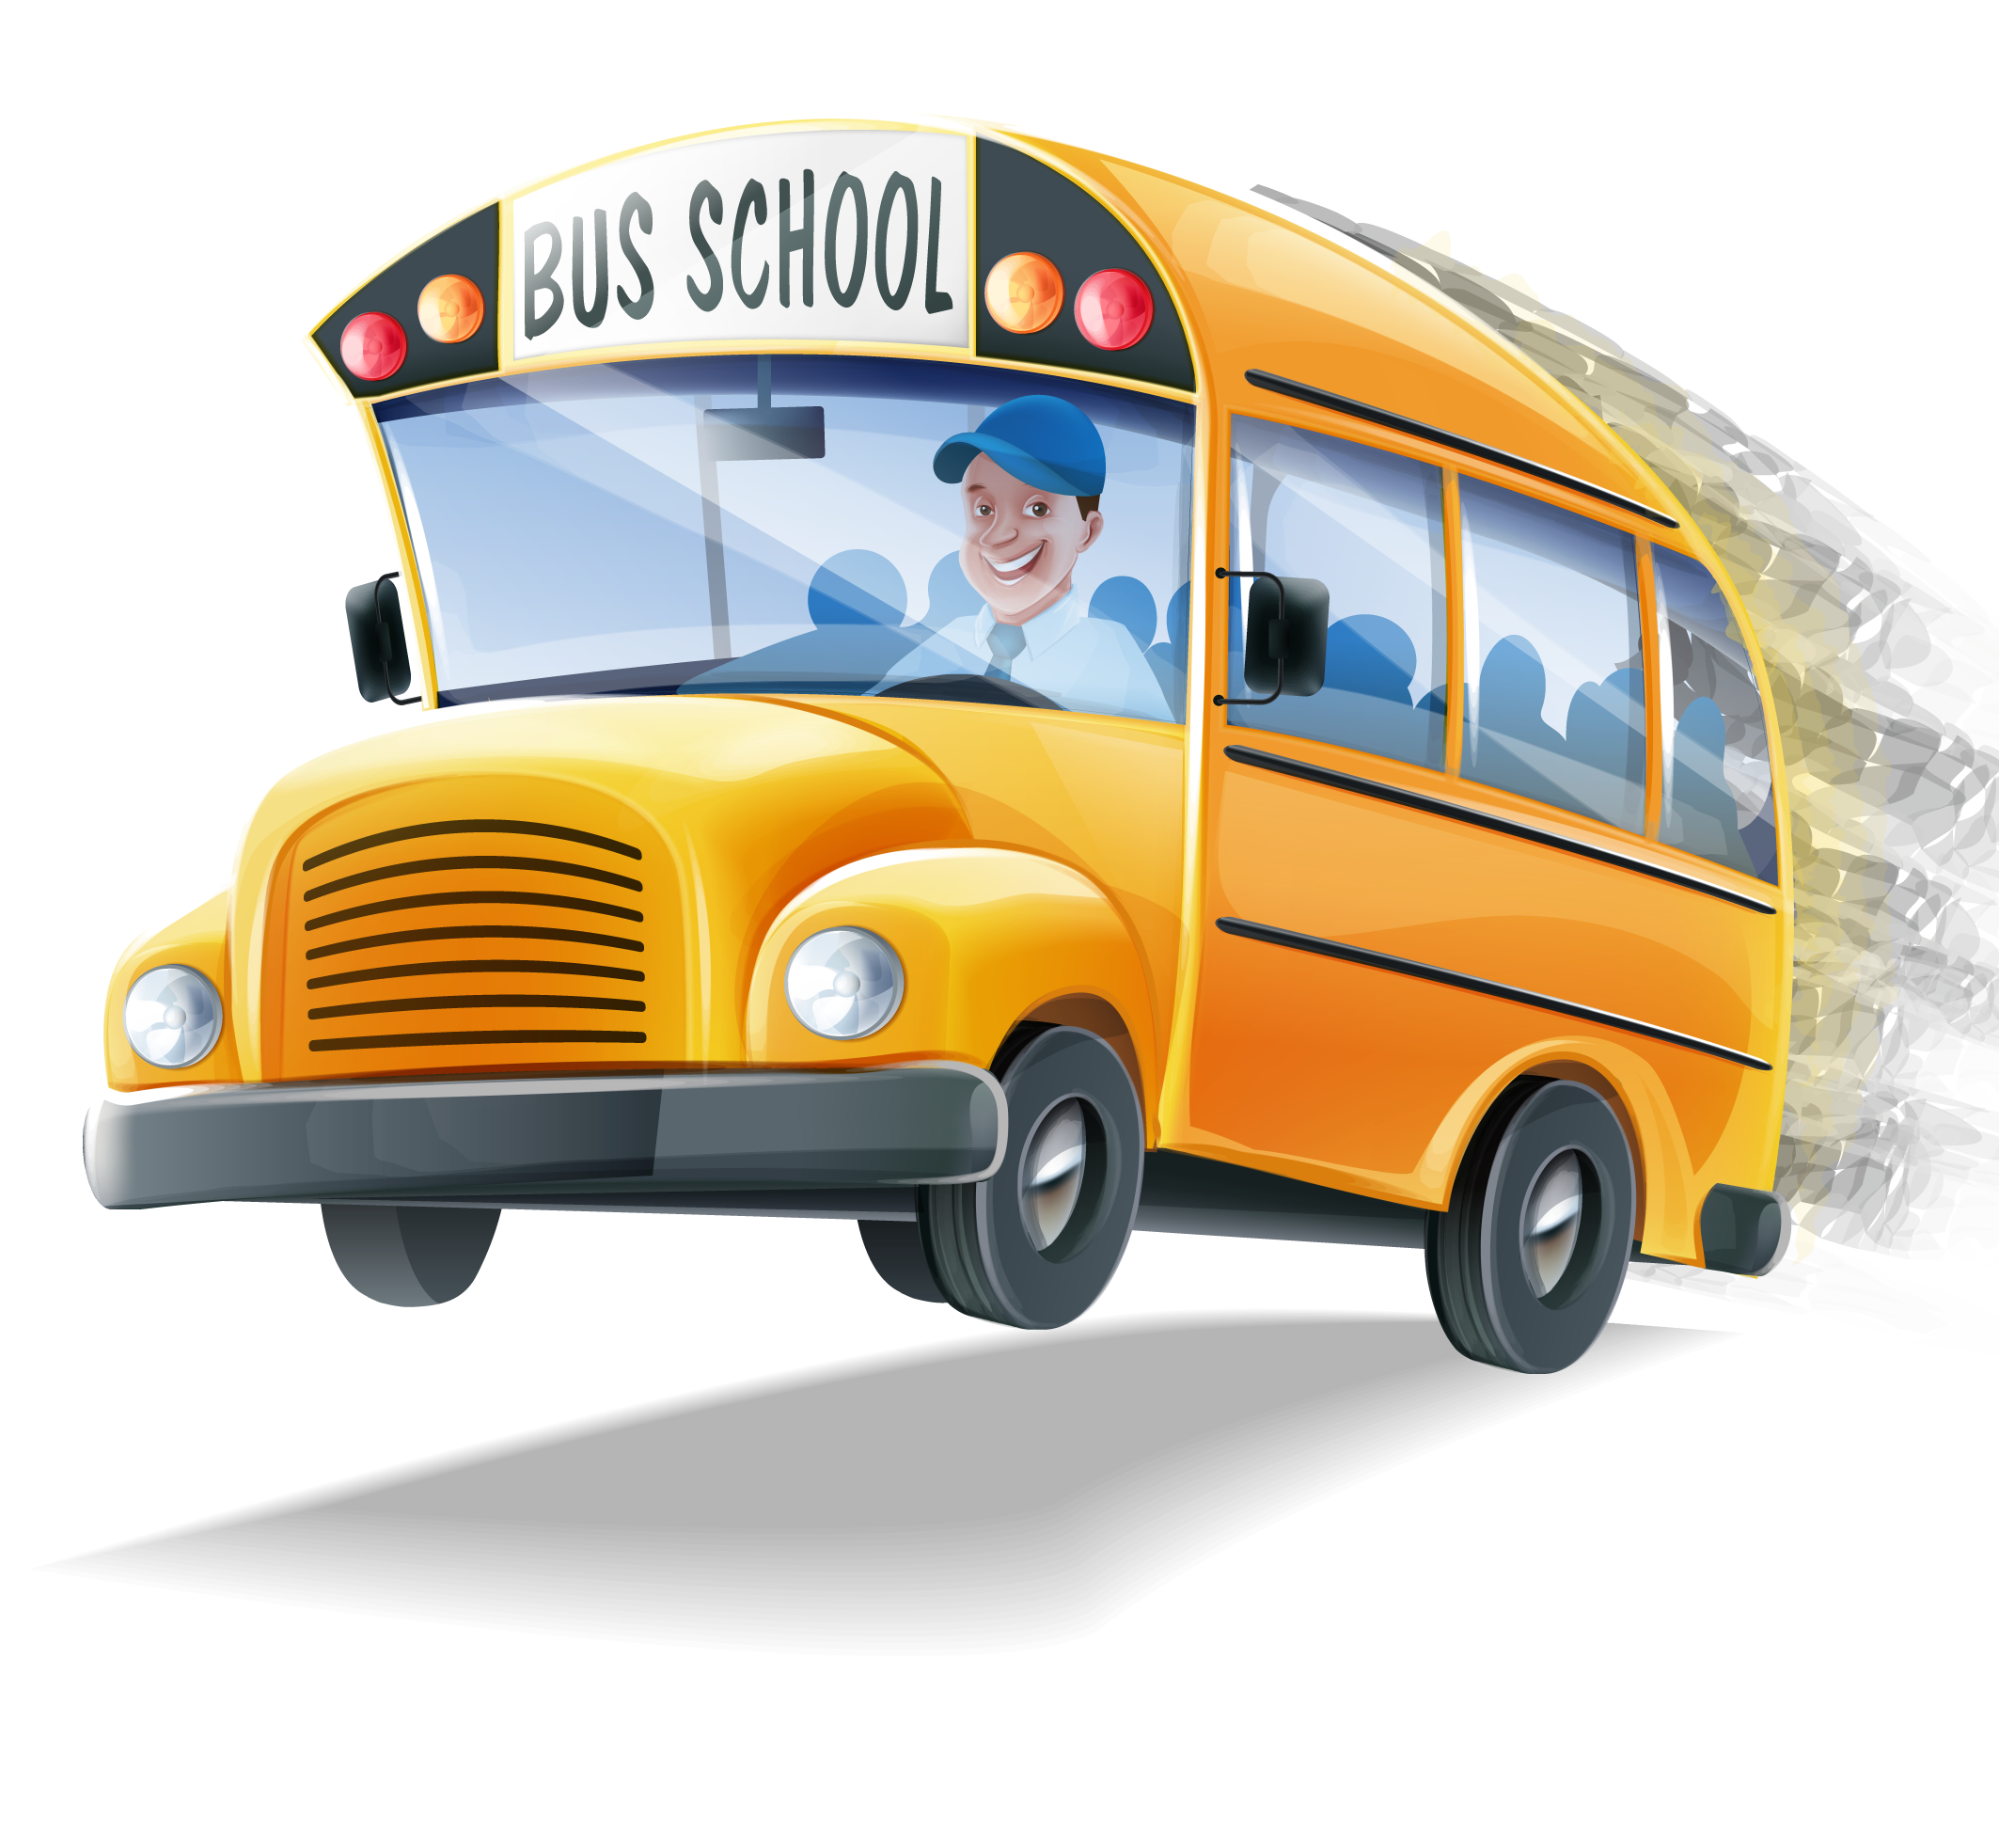 School bus - Cartoon school bus png download - 2126*1965 - Free Transparent  School Bus png Download. - Clip Art Library